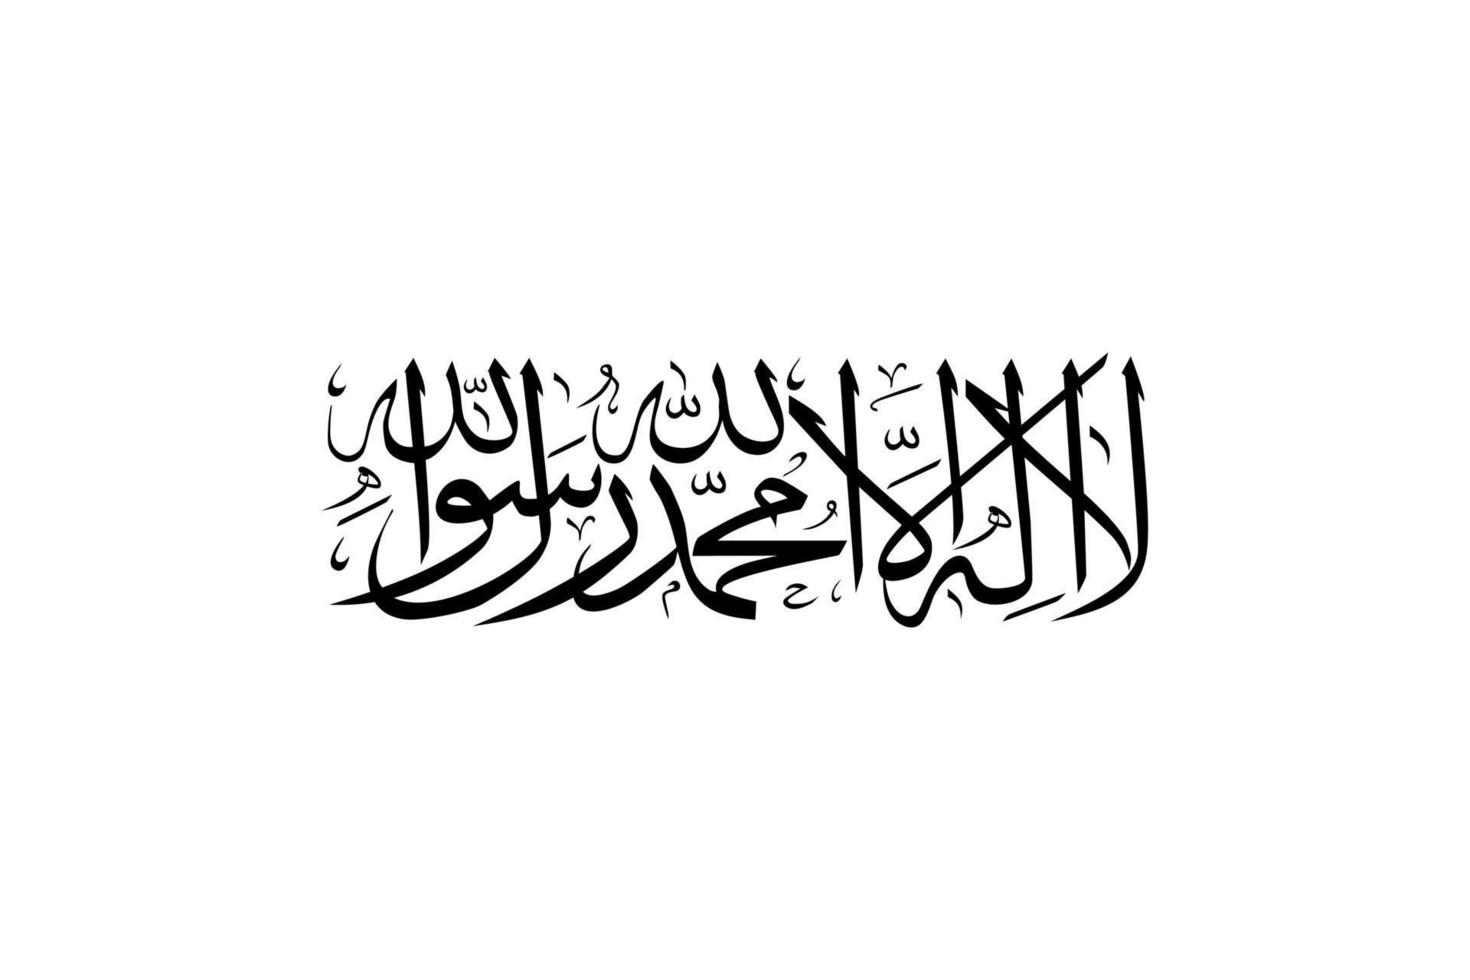 Là è no Dio ma Allah. profeta Maometto è il messaggero di Allah. islamico calligrafia. vettore illustrazione